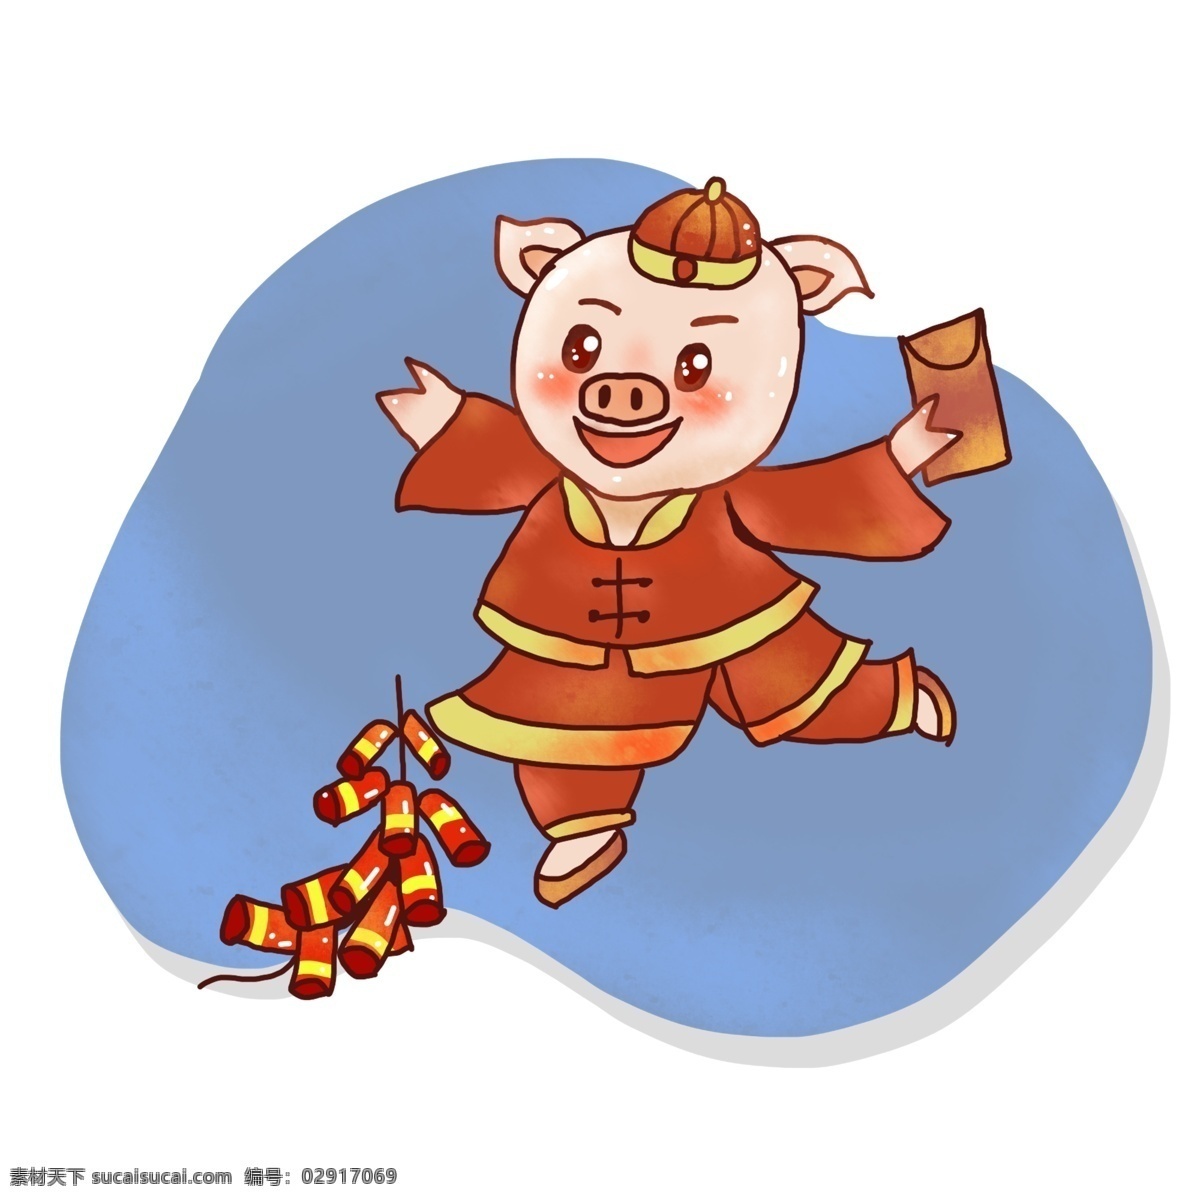 猪 过年 手绘 中国 风 元素 中国风 喜庆 橙色 简单 简约 简约橙色 中国风橙色 简约中国风